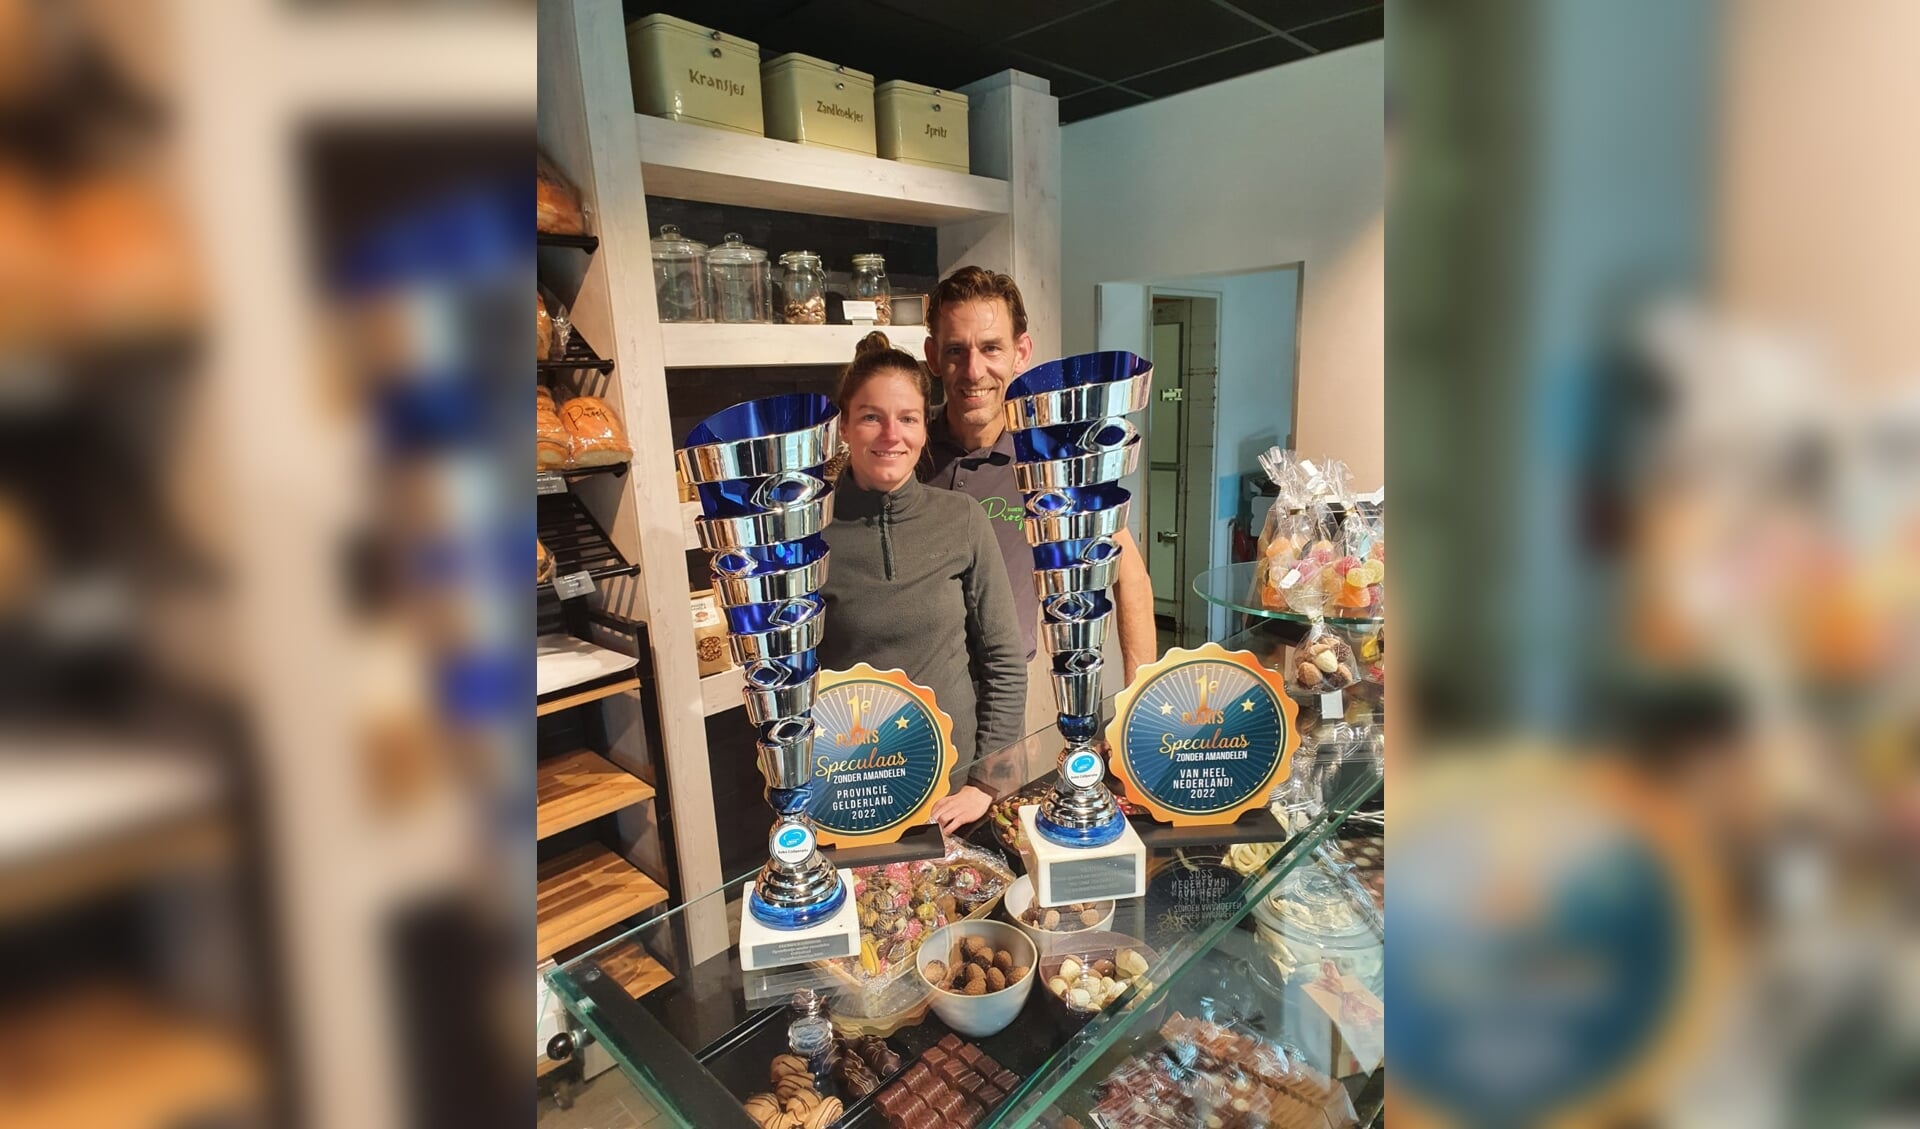 Bakkerij Proef wint de trofee voor lekkerste speculaasjes zonder amandelen van Nederland; Menno en Vera namen de bijbehorende prijzen in ontvangst. Foto: PR